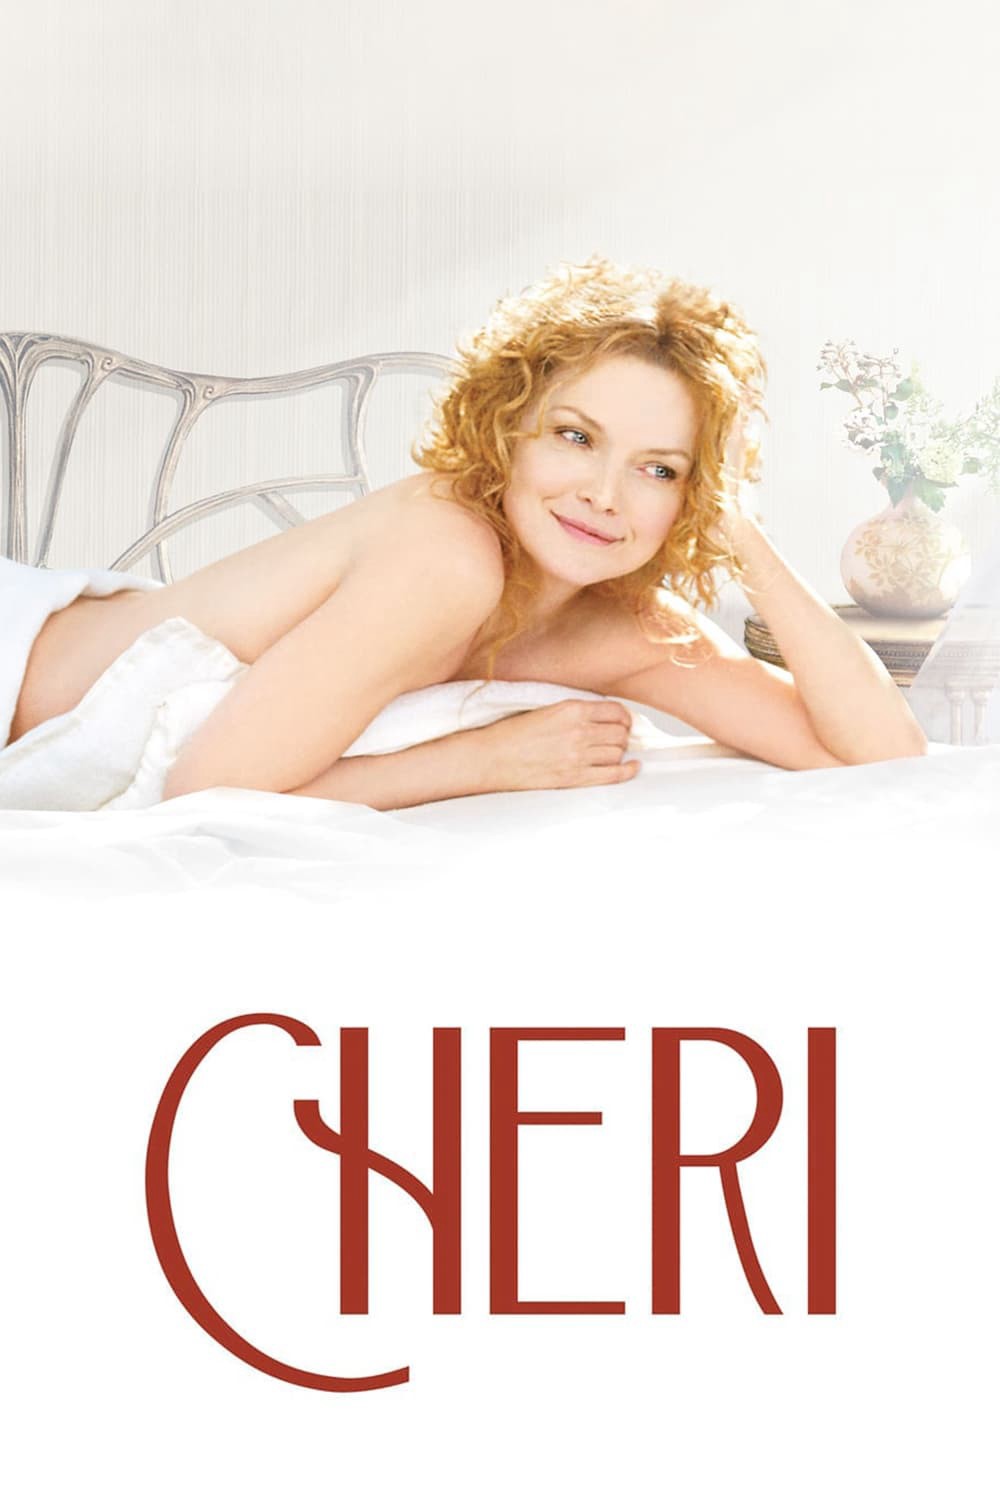 Chuyện Tình Cheri - Chuyện Tình Cheri (2009)